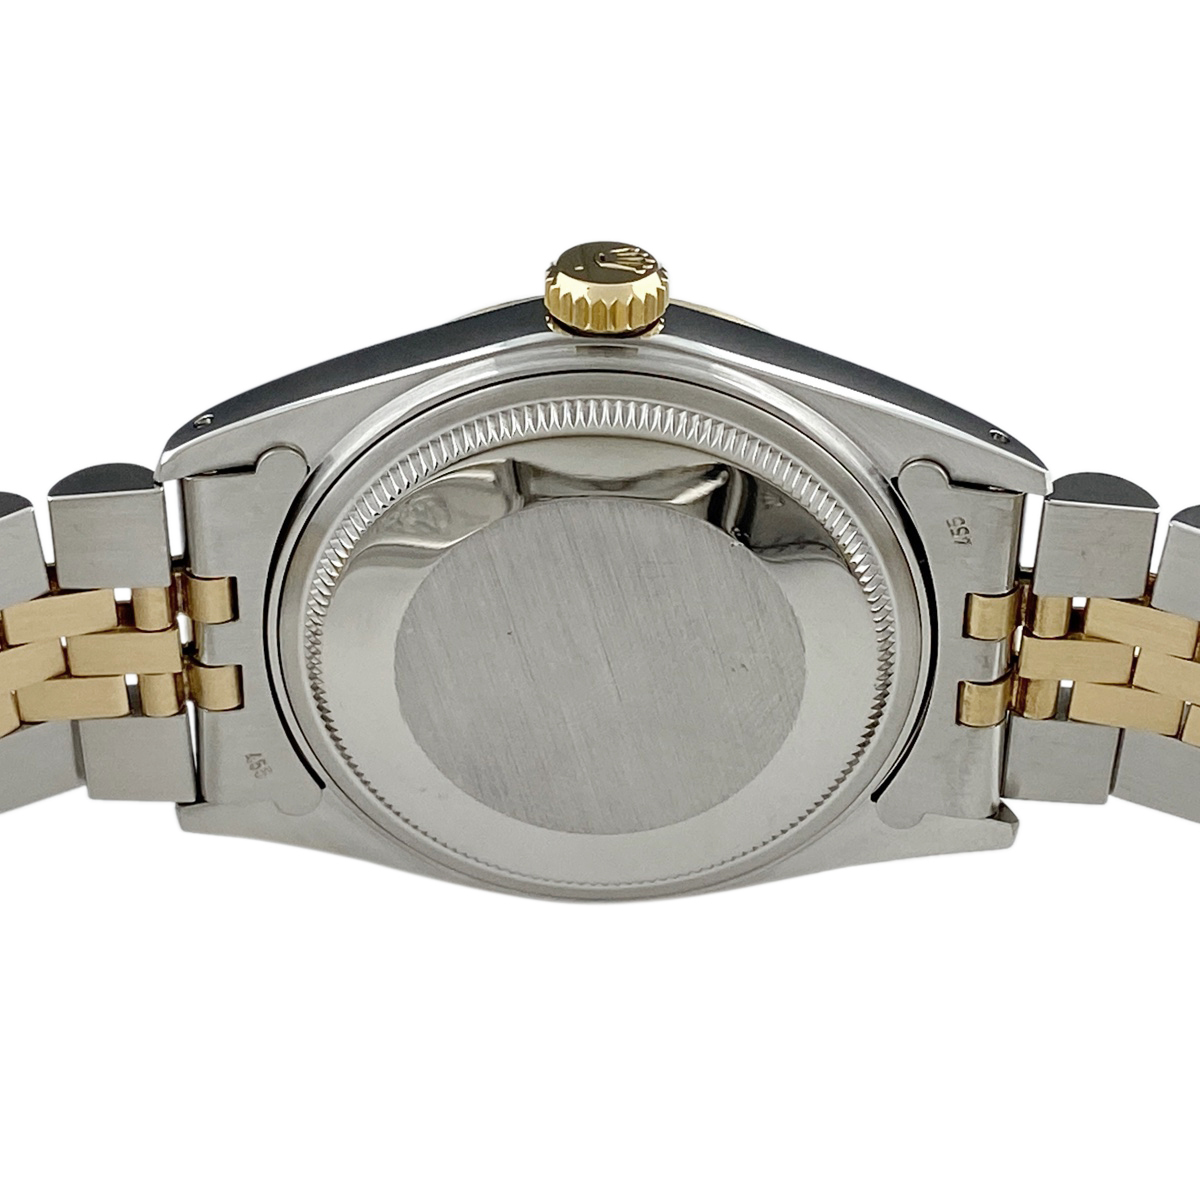 ロレックス ROLEX デイトジャスト 16013 腕時計 SS YG 自動巻き シャンパンゴールド メンズ 【中古】_バイセル 14150_3